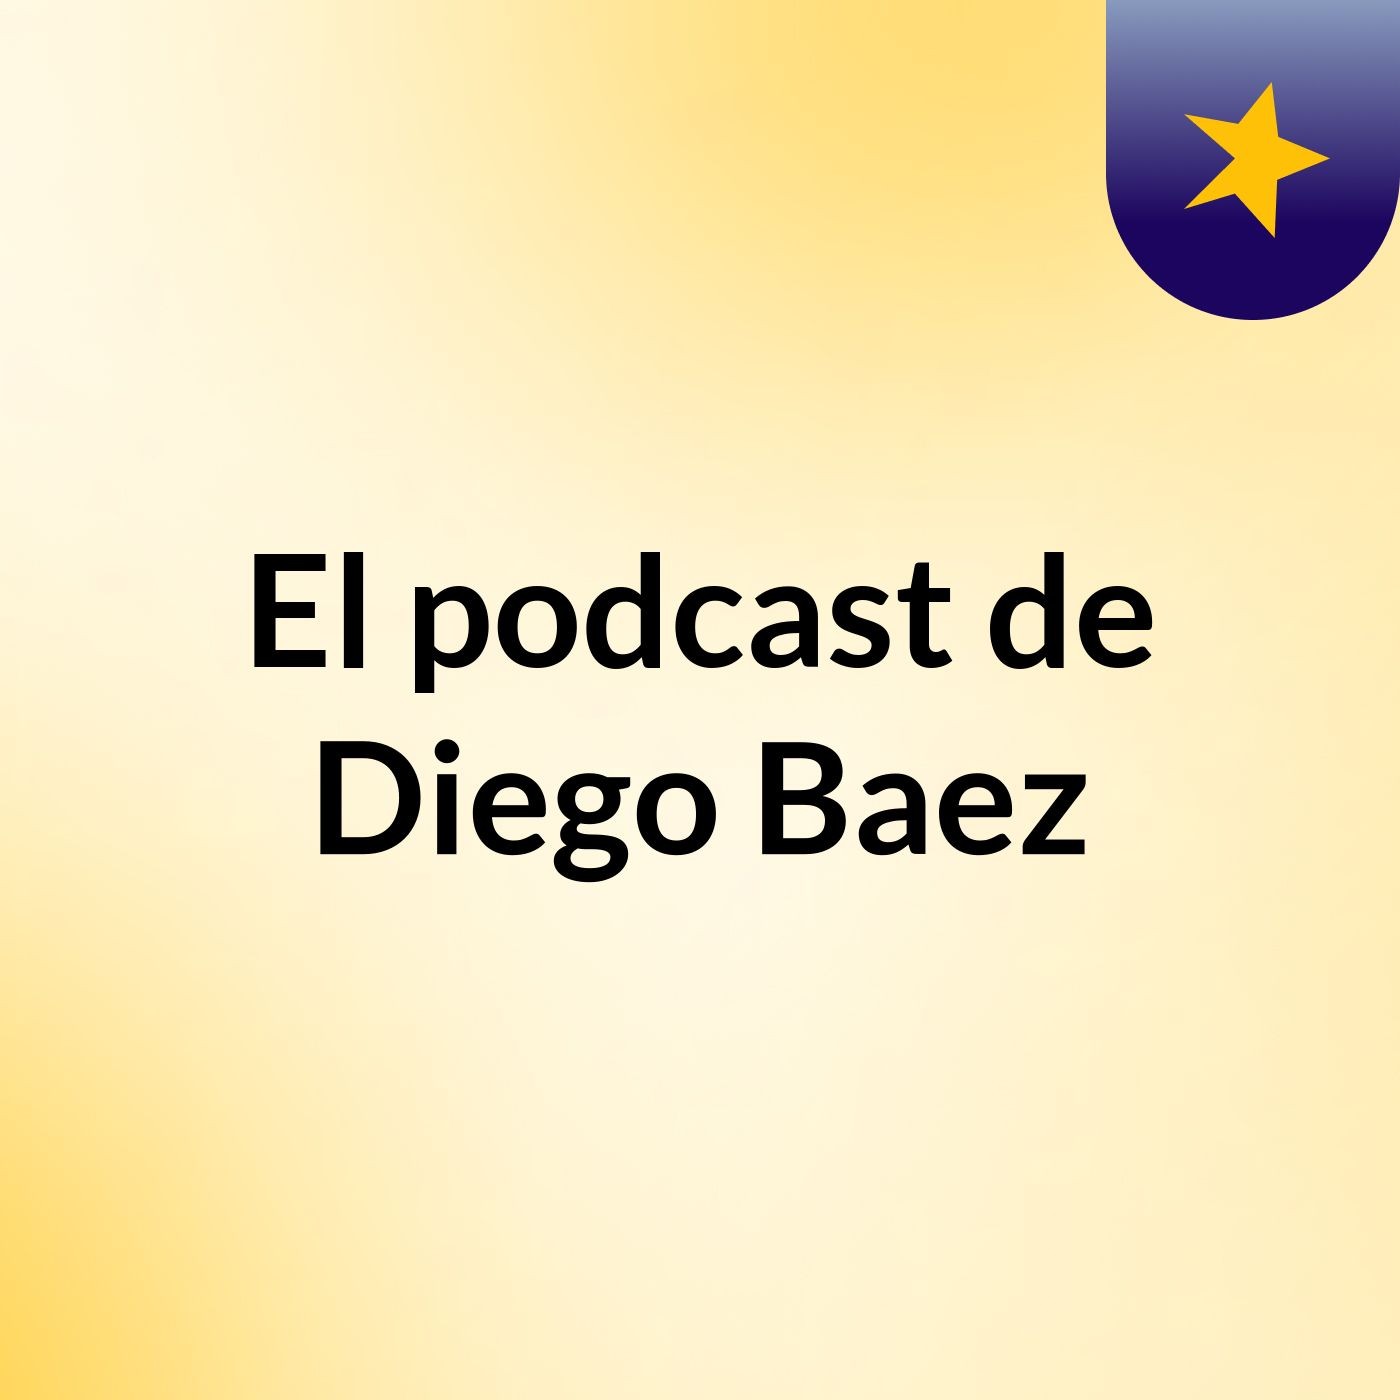 El podcast de Diego Baez